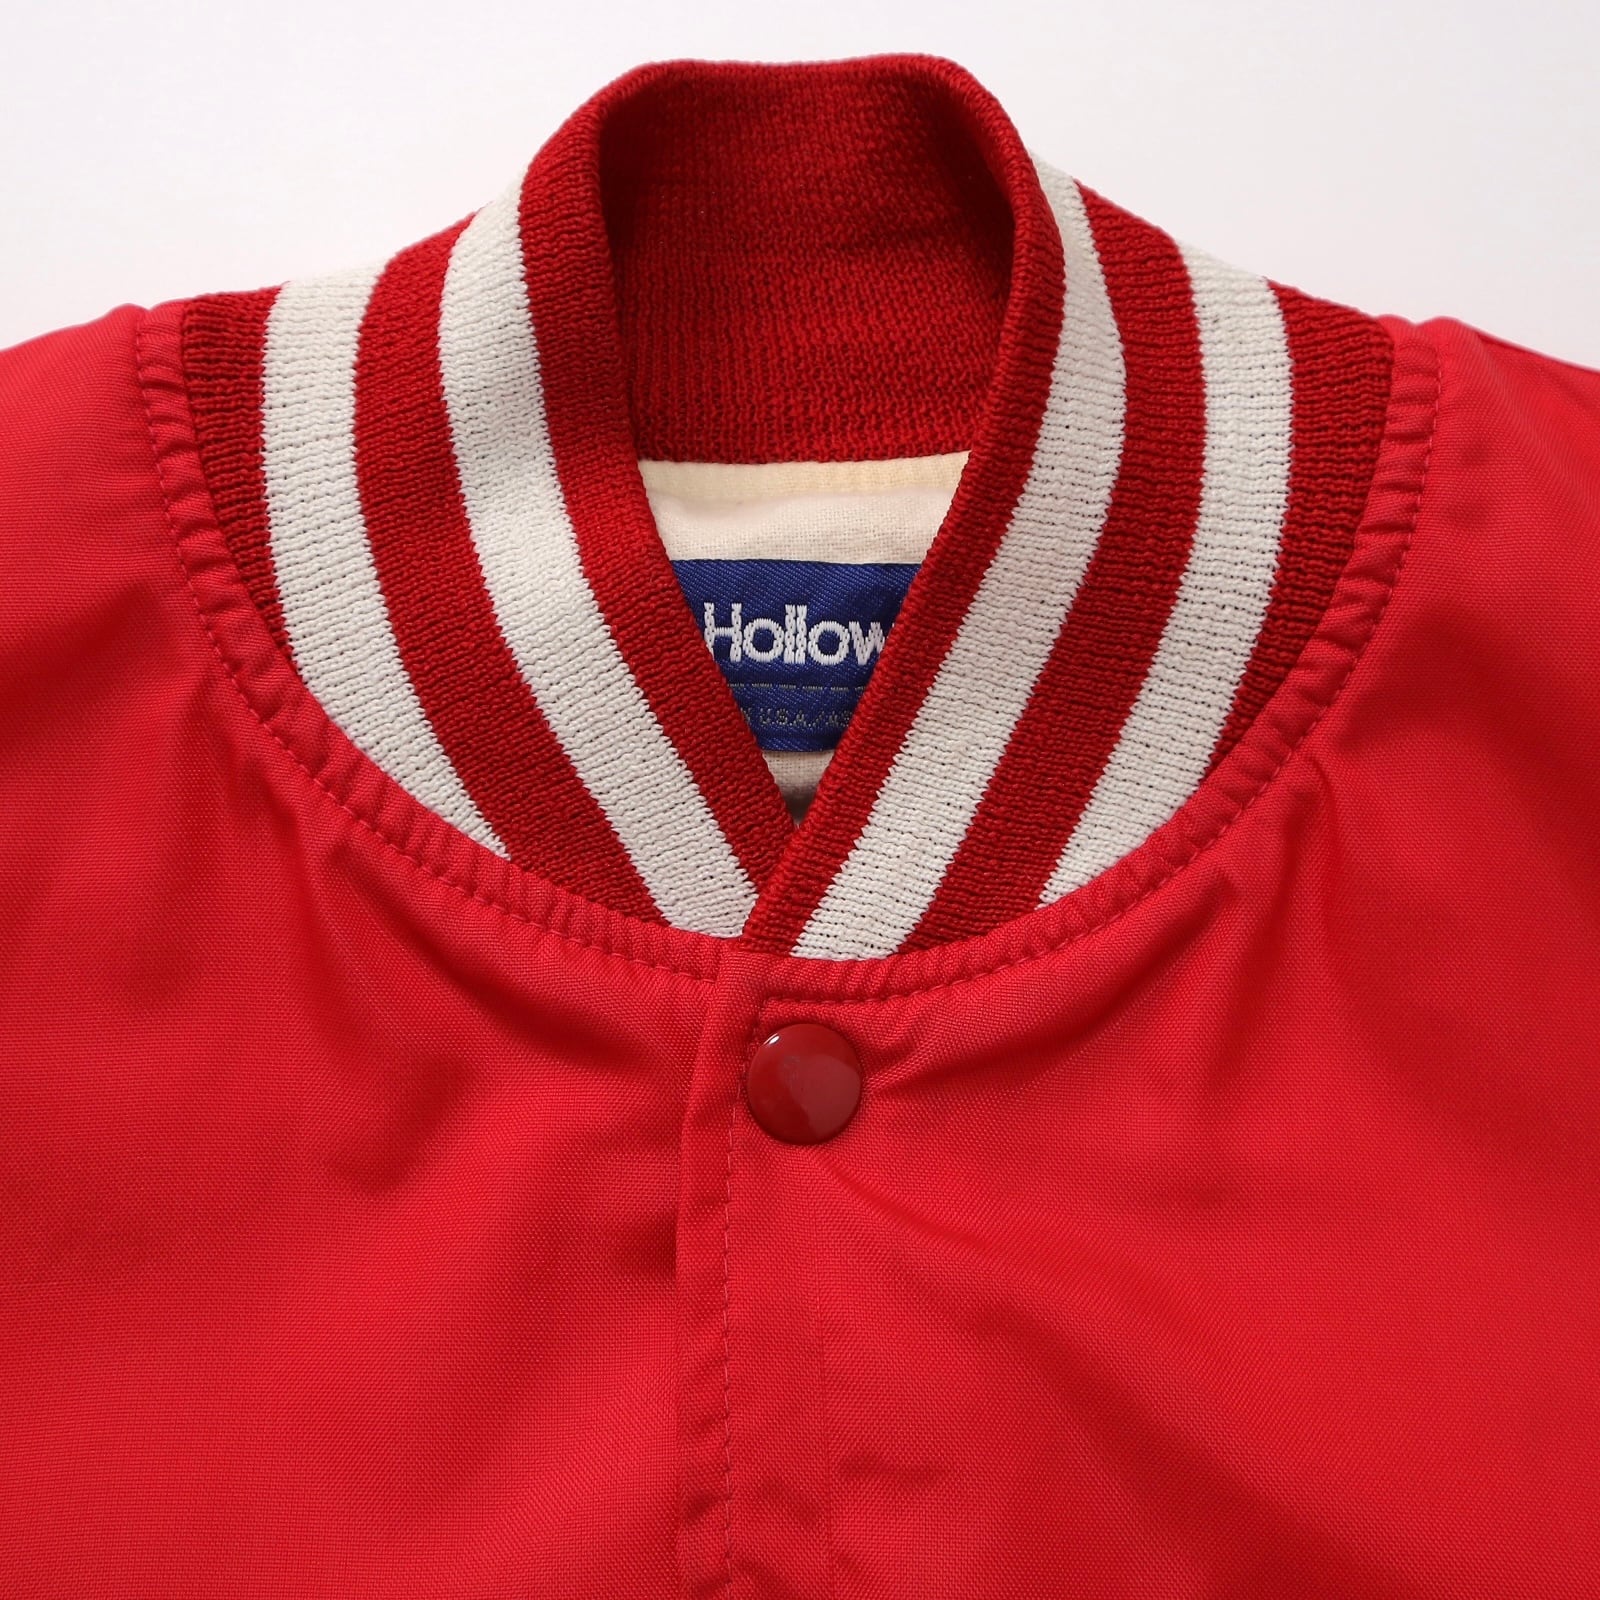 90s Holloway チェーンステッチ 刺繍 ナイロン スタジャン アワードジャケット バーシティジャケット ブルゾン USA製 赤 レッド 古着  ヴィンテージ ビンテージ 90年代 メンズL相当 表記M 22120403